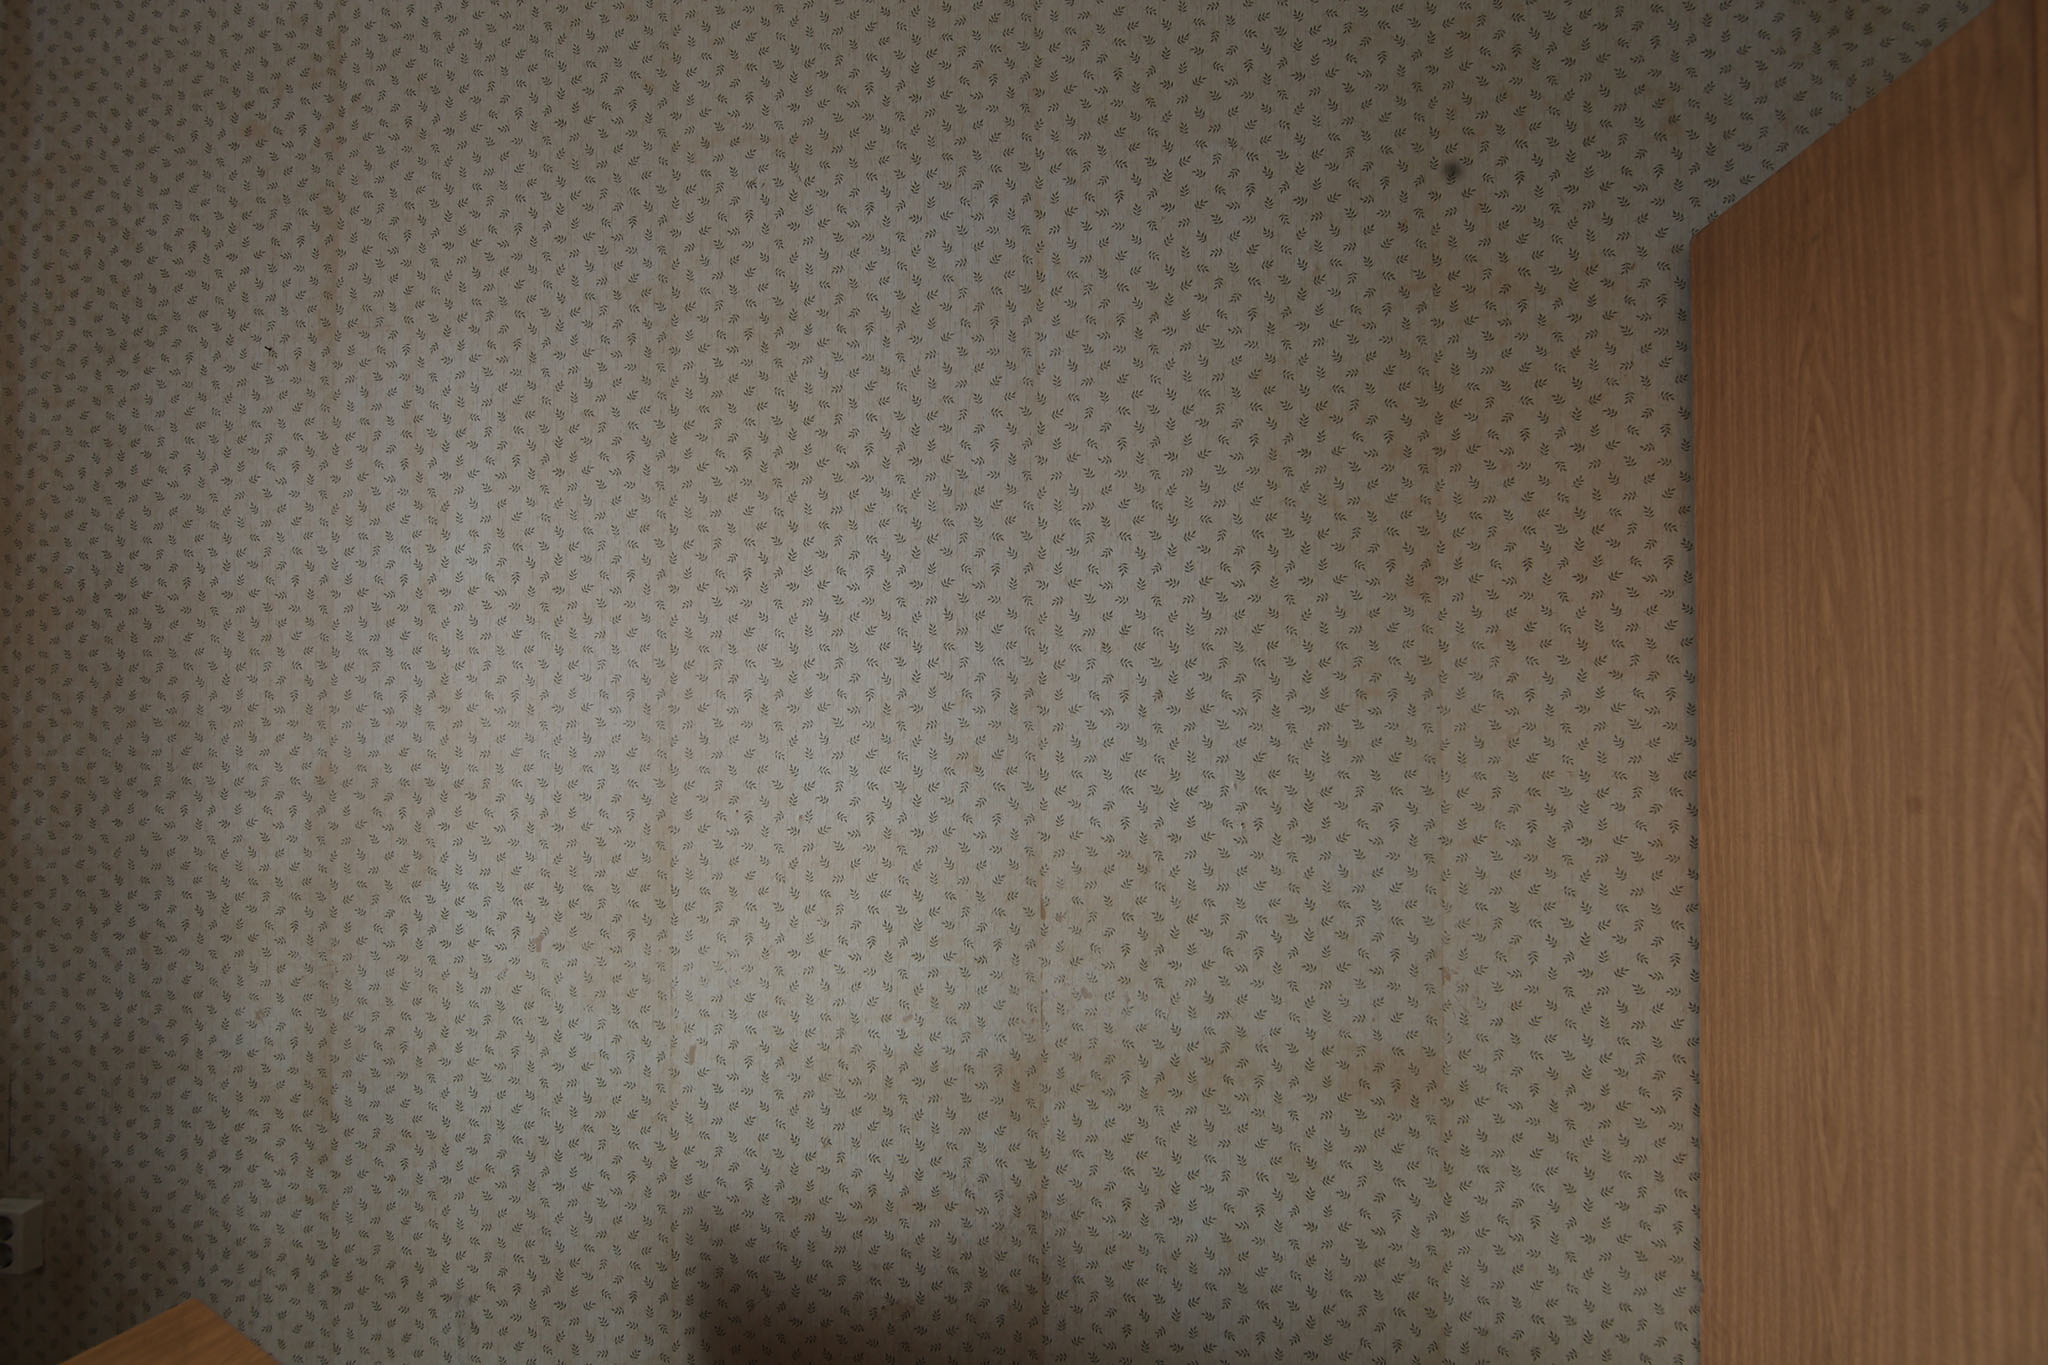 Aufnahmen vom 4.5.2012 des Raums 183 im Erdgeschoss des Südflügels der zentralen Untersuchungshaftanstalt des Ministerium für Staatssicherheit der Deutschen Demokratischen Republik in Berlin-Hohenschönhausen, Foto 58